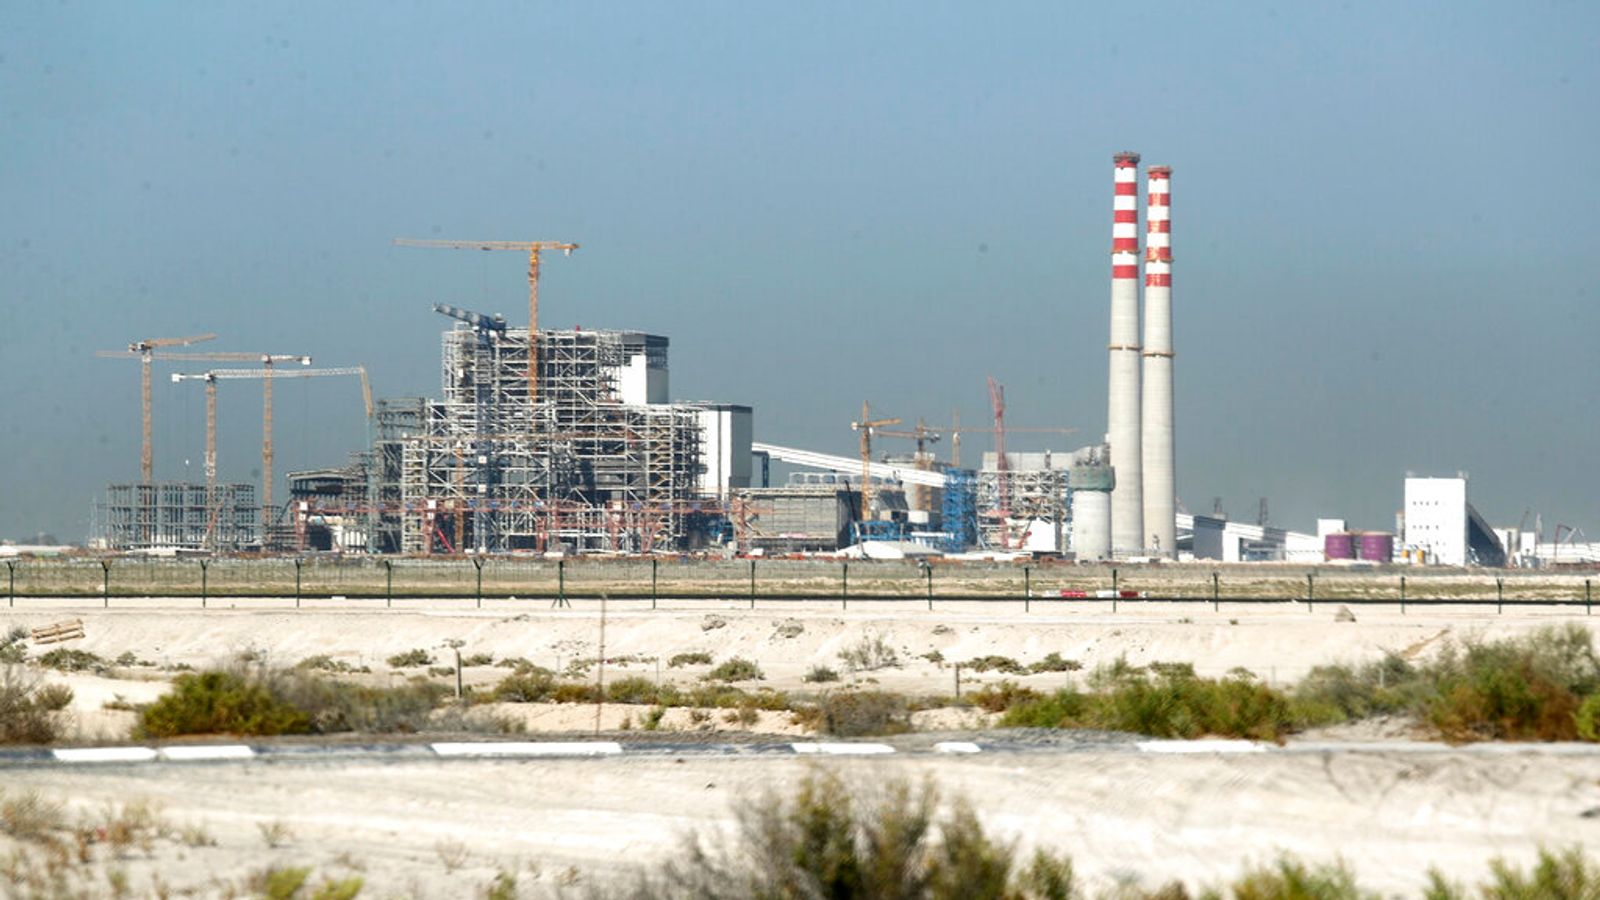 Les Émirats arabes unis, hôtes de la COP28, ont rétrogradé leur plan climatique à « critiquement insuffisant » alors qu’ils abritaient le sommet |  Actualités climatiques